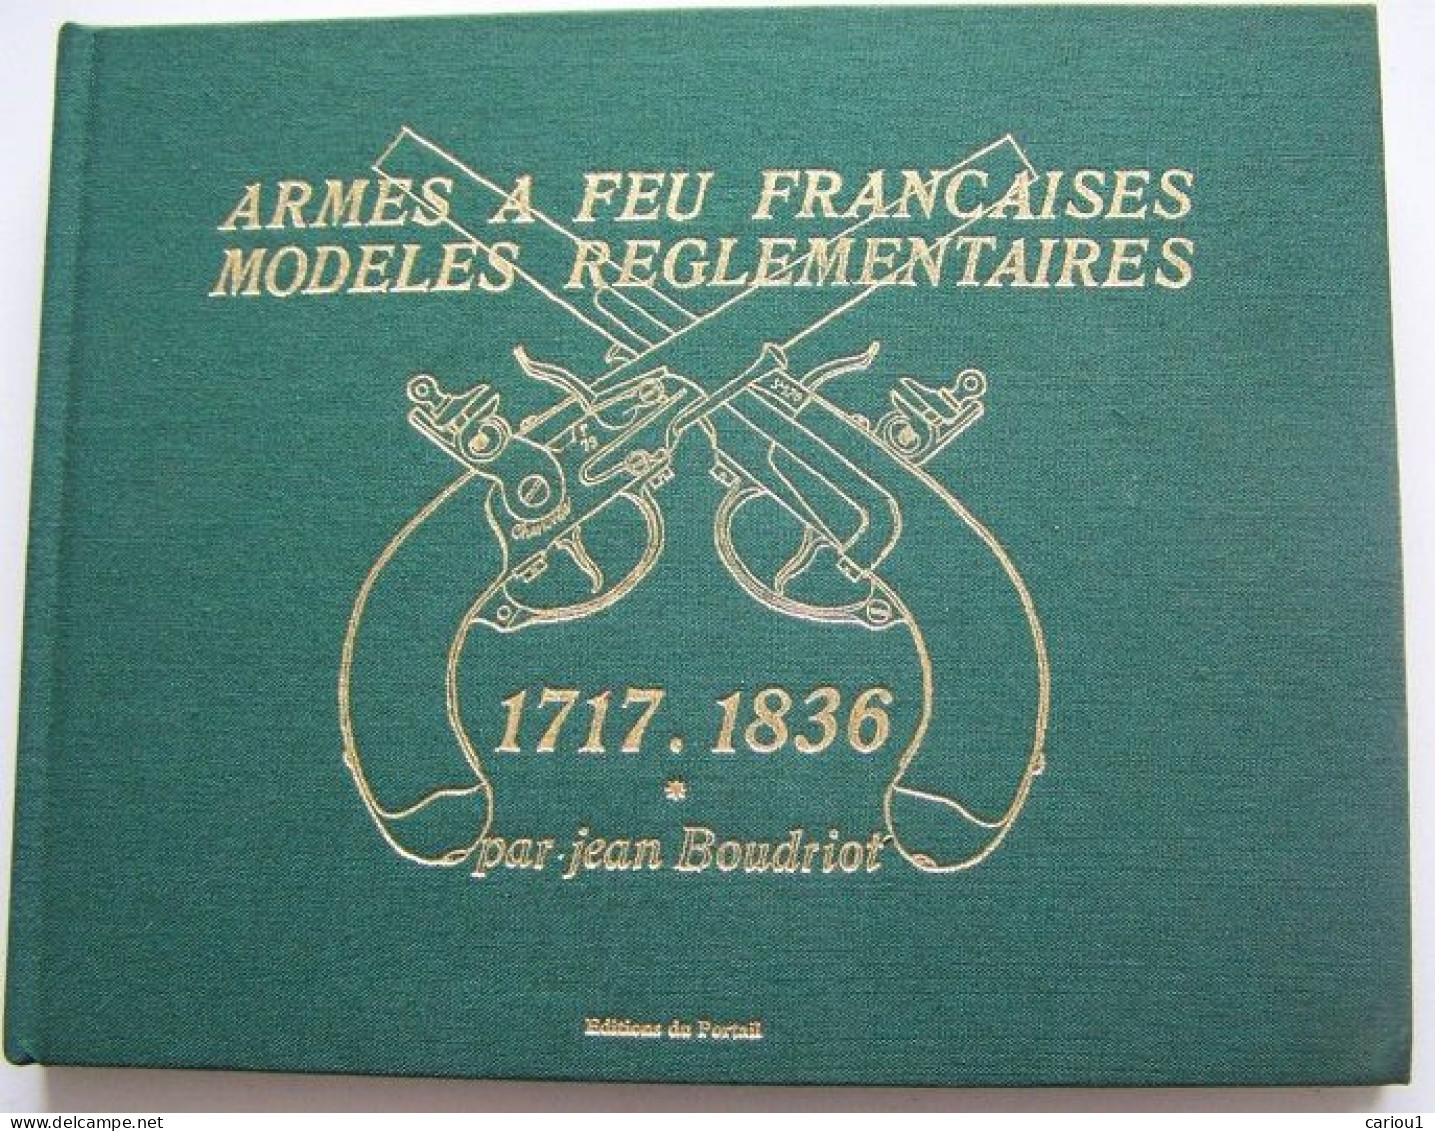 C1  Boudriot ARMES A FEU FRANCAISES 1717 1836 Tome 1 1997 Relie ILLUSTRE - French